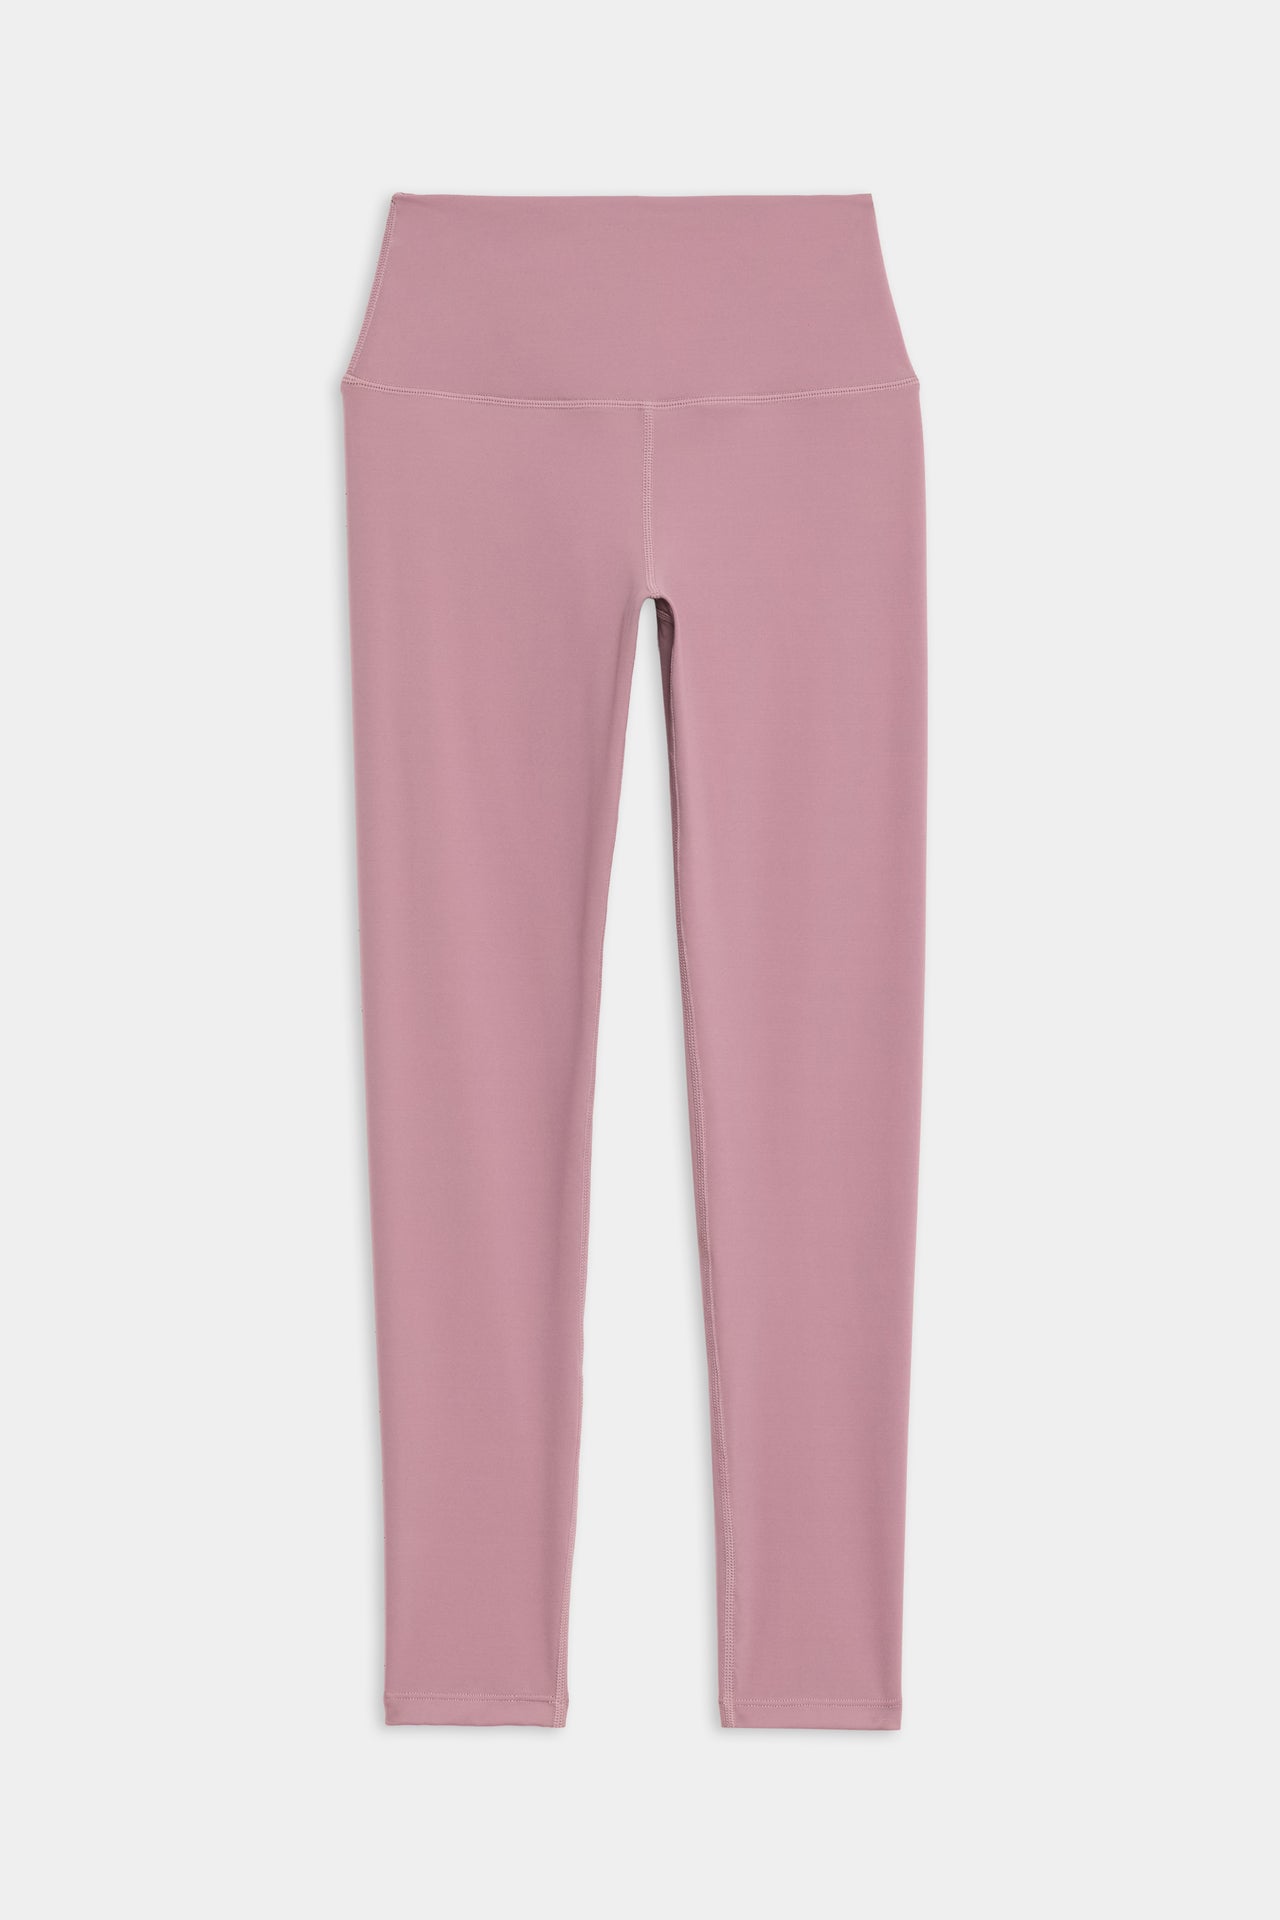 Front flat view of  light pink high waist  leggings